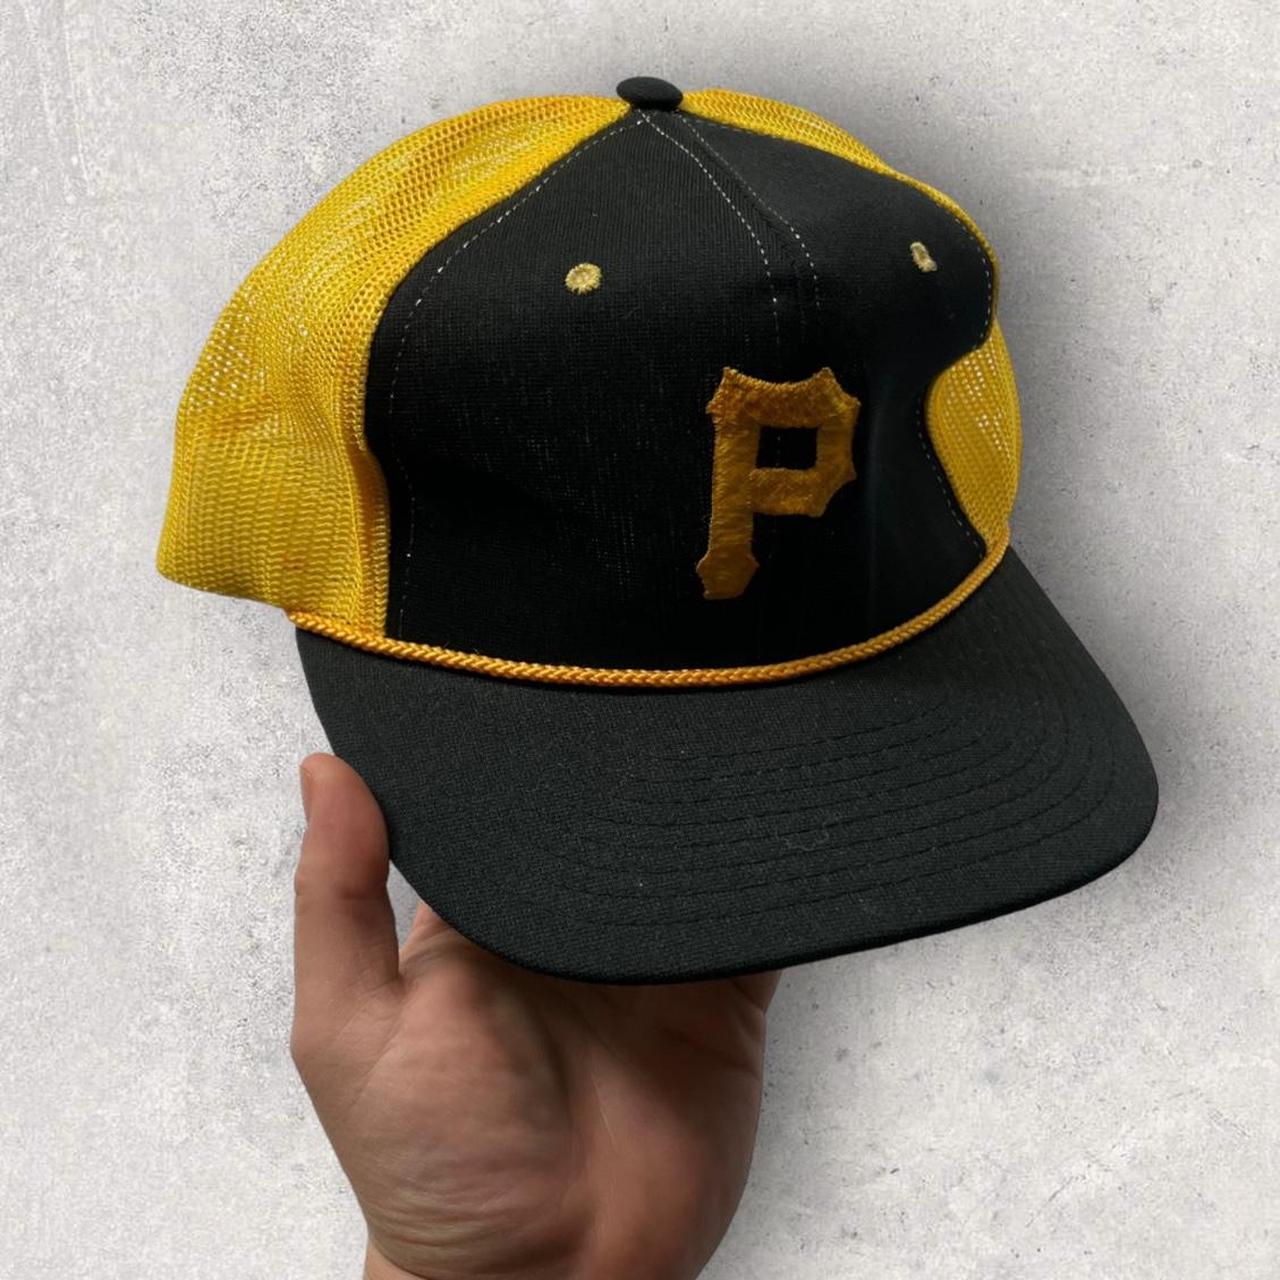 Pittsburgh Pirates Baseball Hat - Vintage Black Corduroy men's